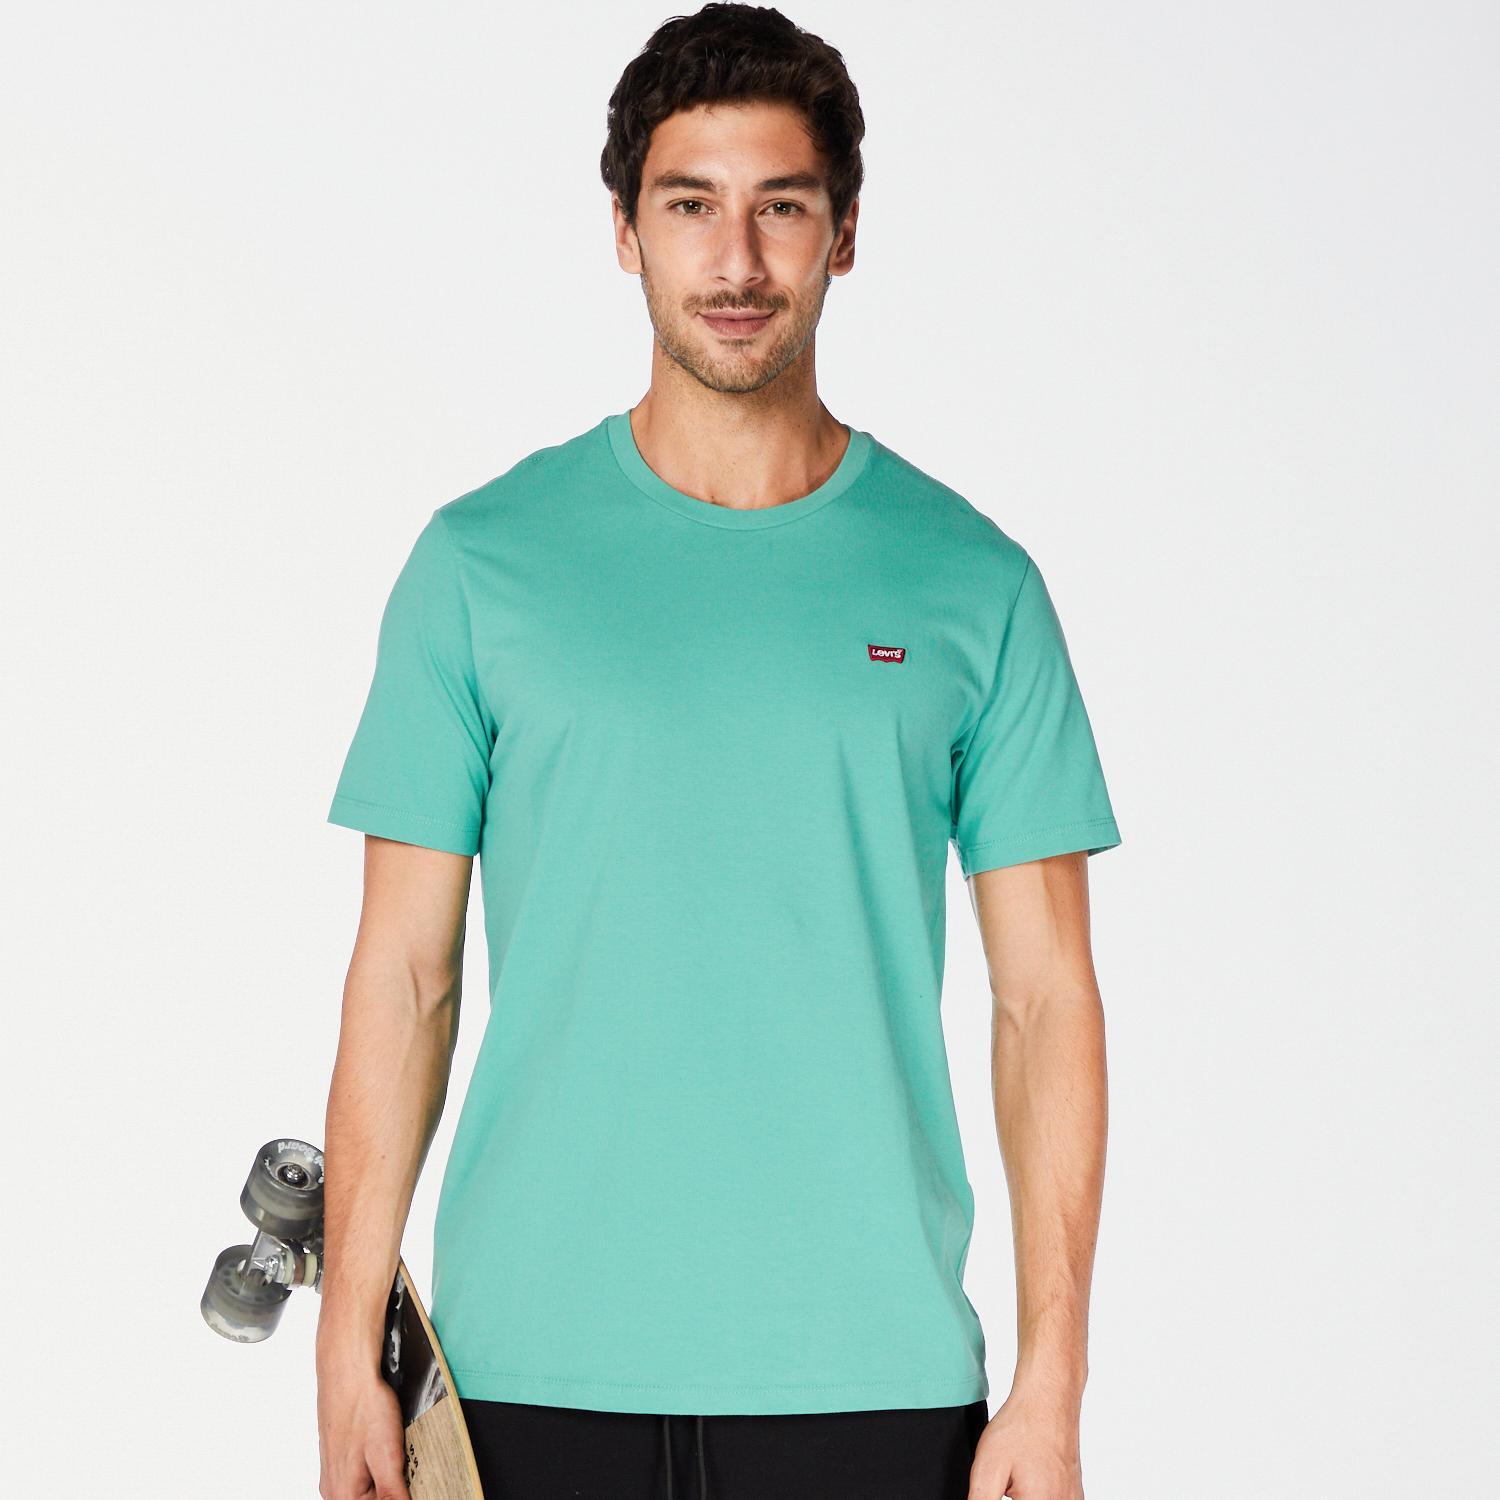 Levi's Original - Verde - T-shirt Homem tamanho L product